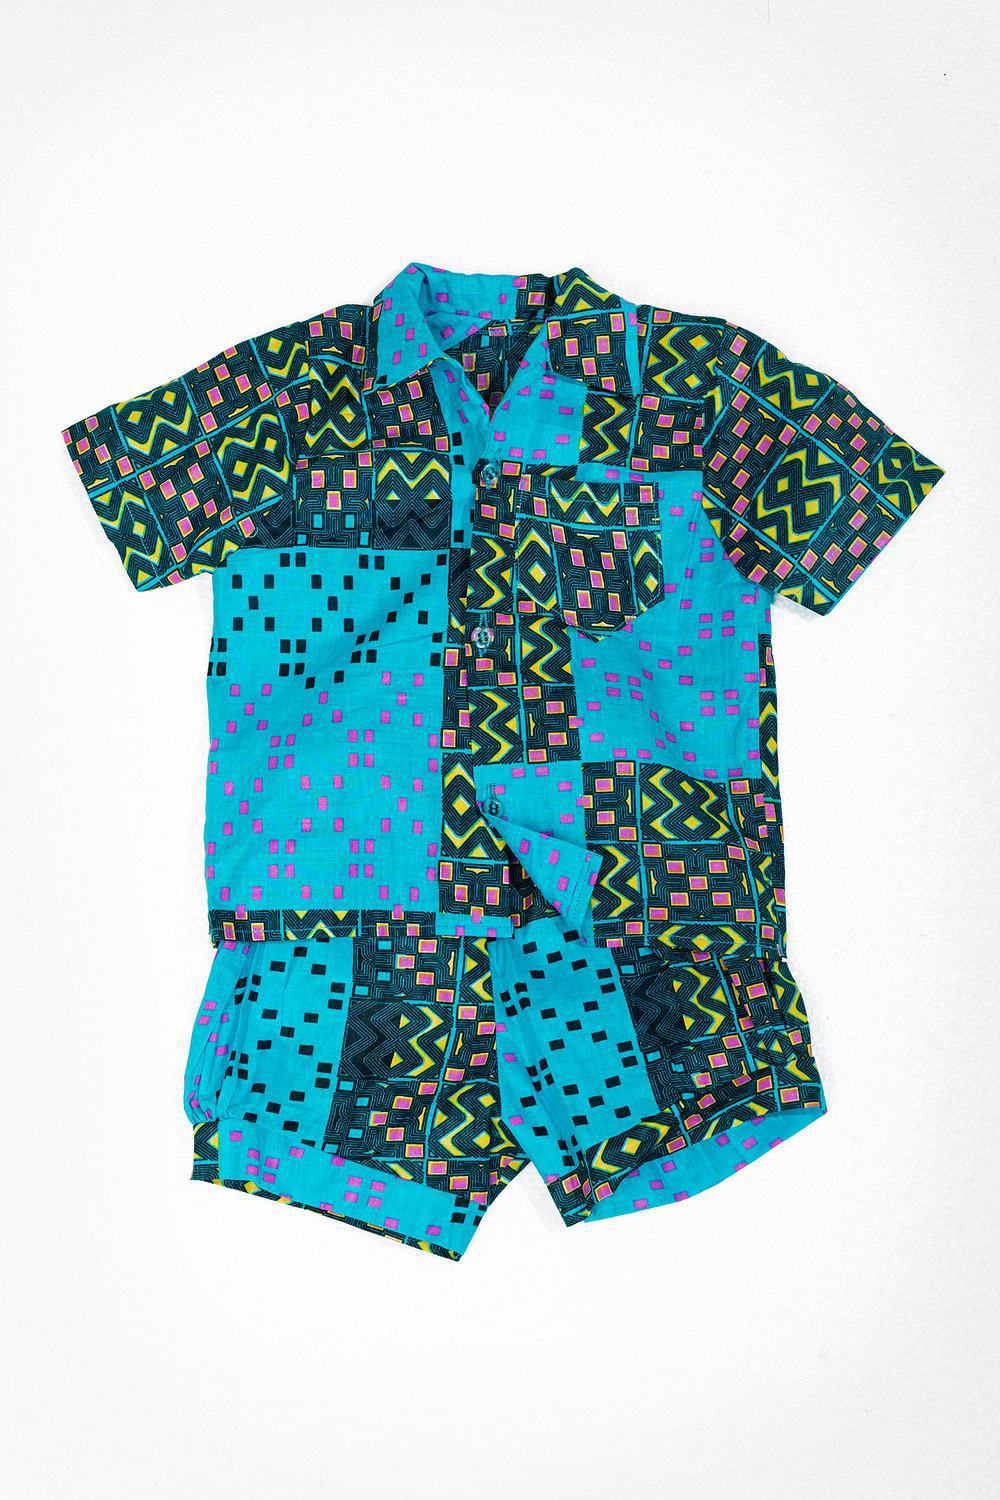 Vêtement bébé garçons 6 mois - Mode ethnique - Vêtements enfants